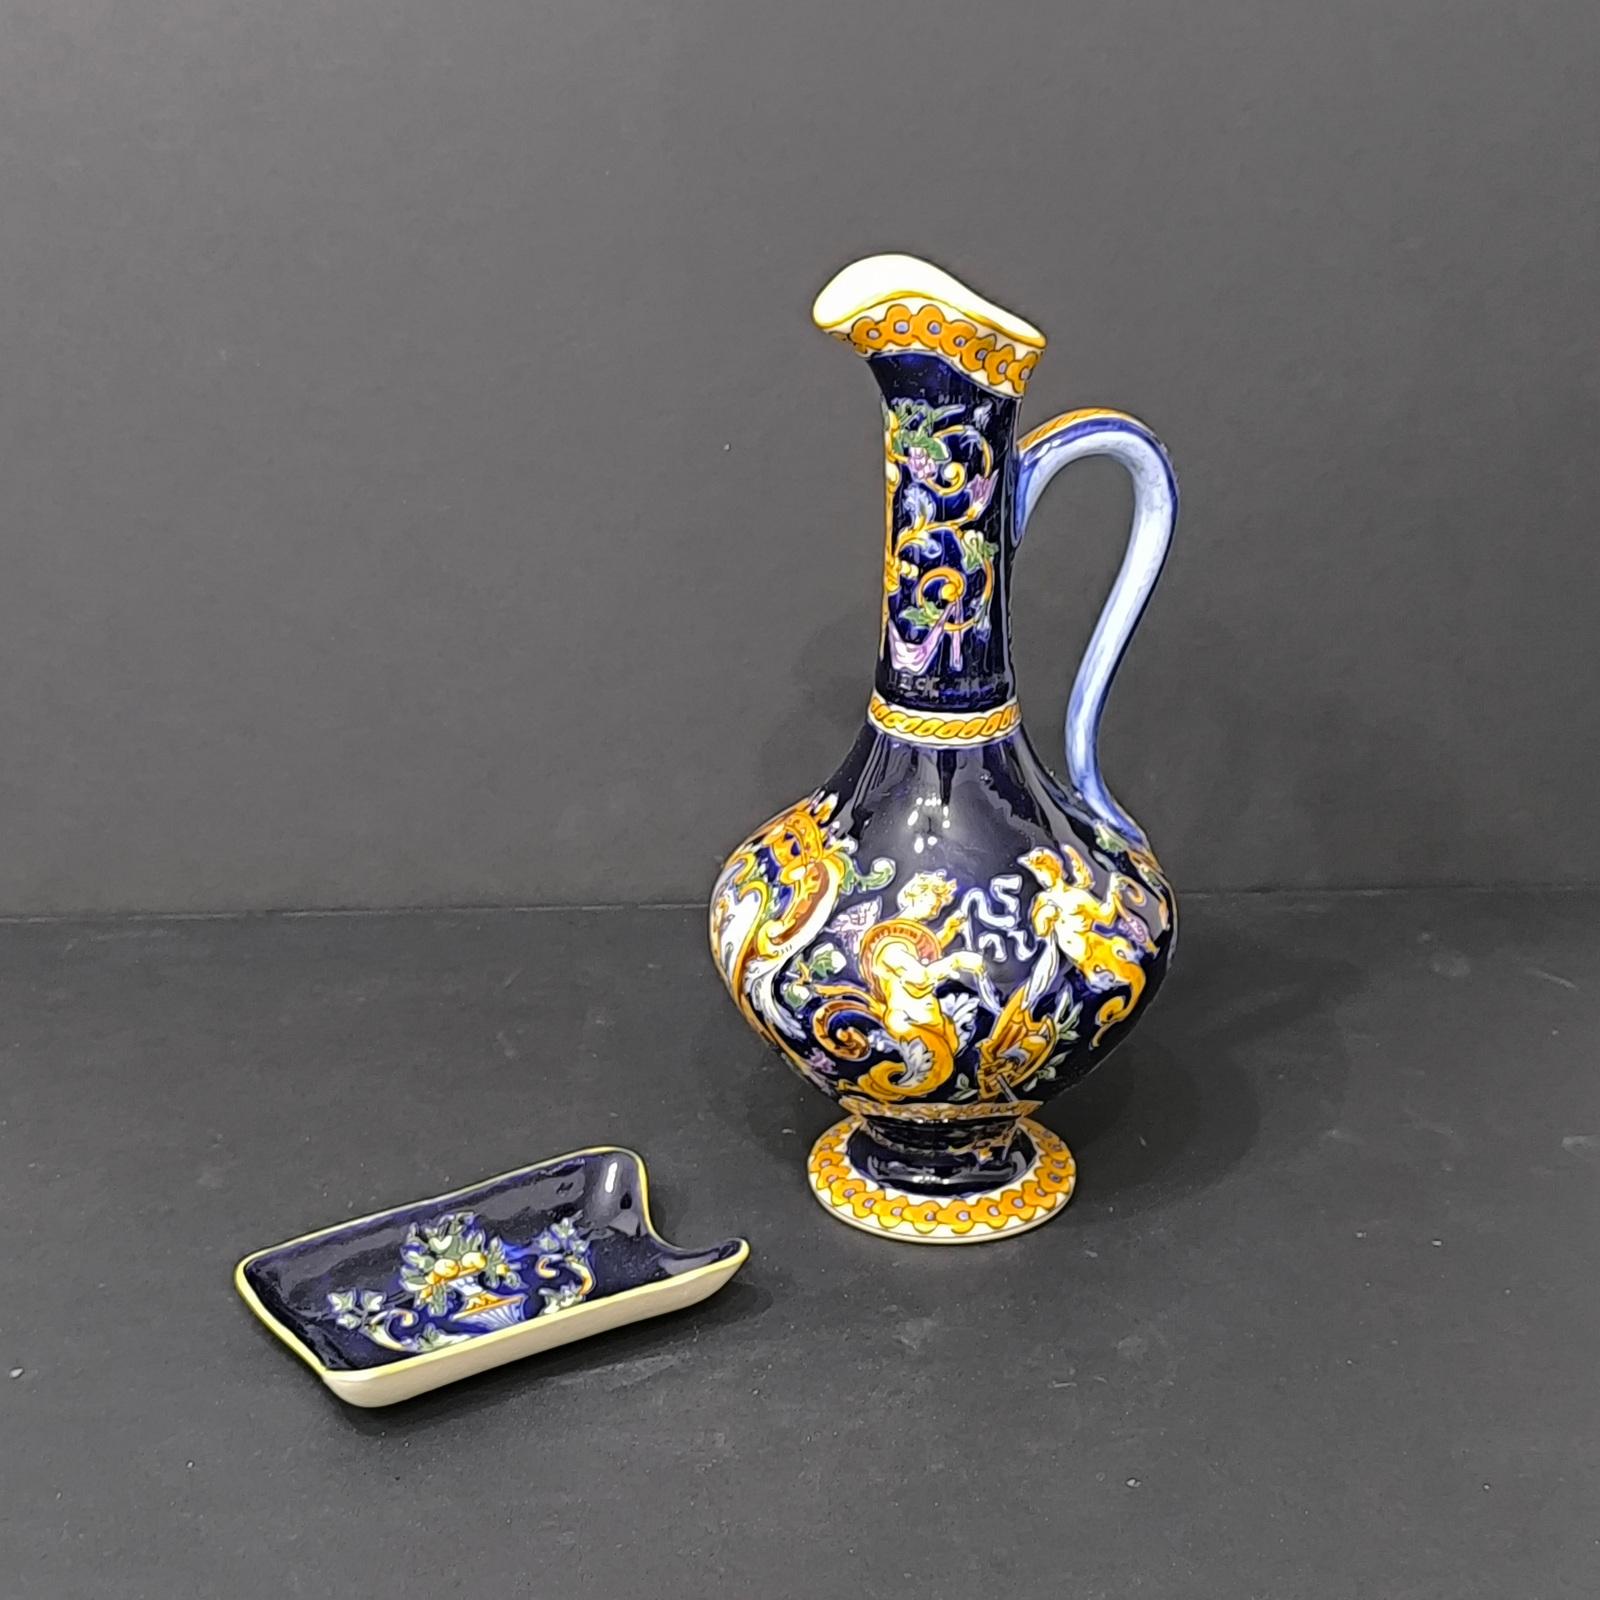 Un bel ensemble de pièces en céramique de Gien France, années 1970-1980.
Il se compose d'une cruche et d'un petit plateau.
La cruche est peinte à la main d'un motif Renaissance sur un fond émaillé bleu royal, habilement réalisé avec le souci du